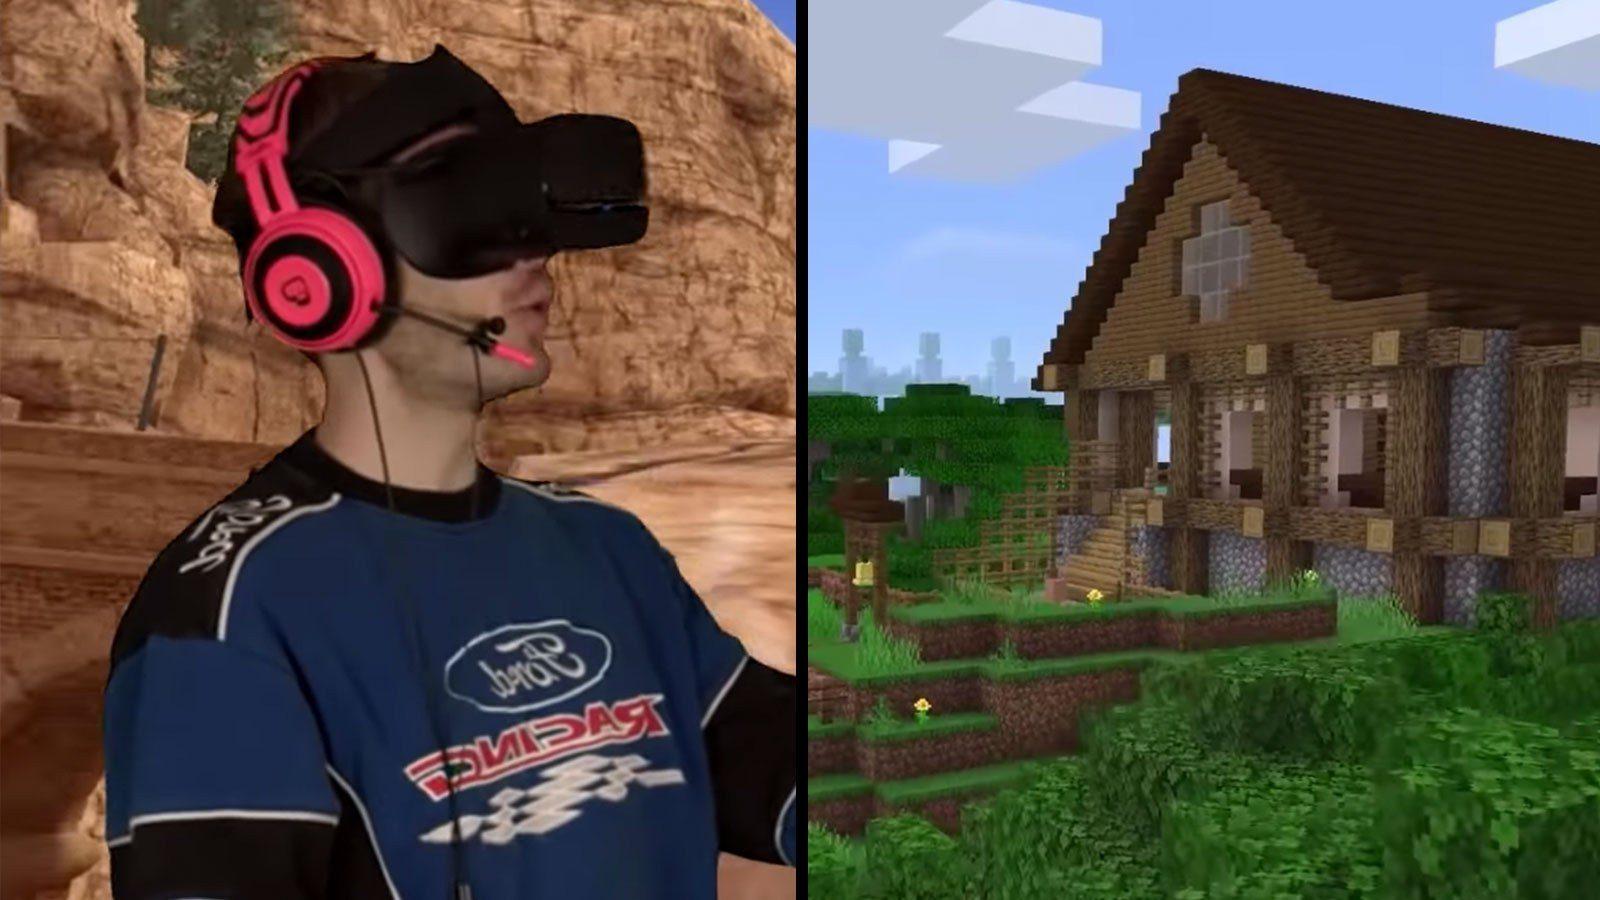 PewDiePie trolls fans with 4K “Minecraft” VR video - Dexerto